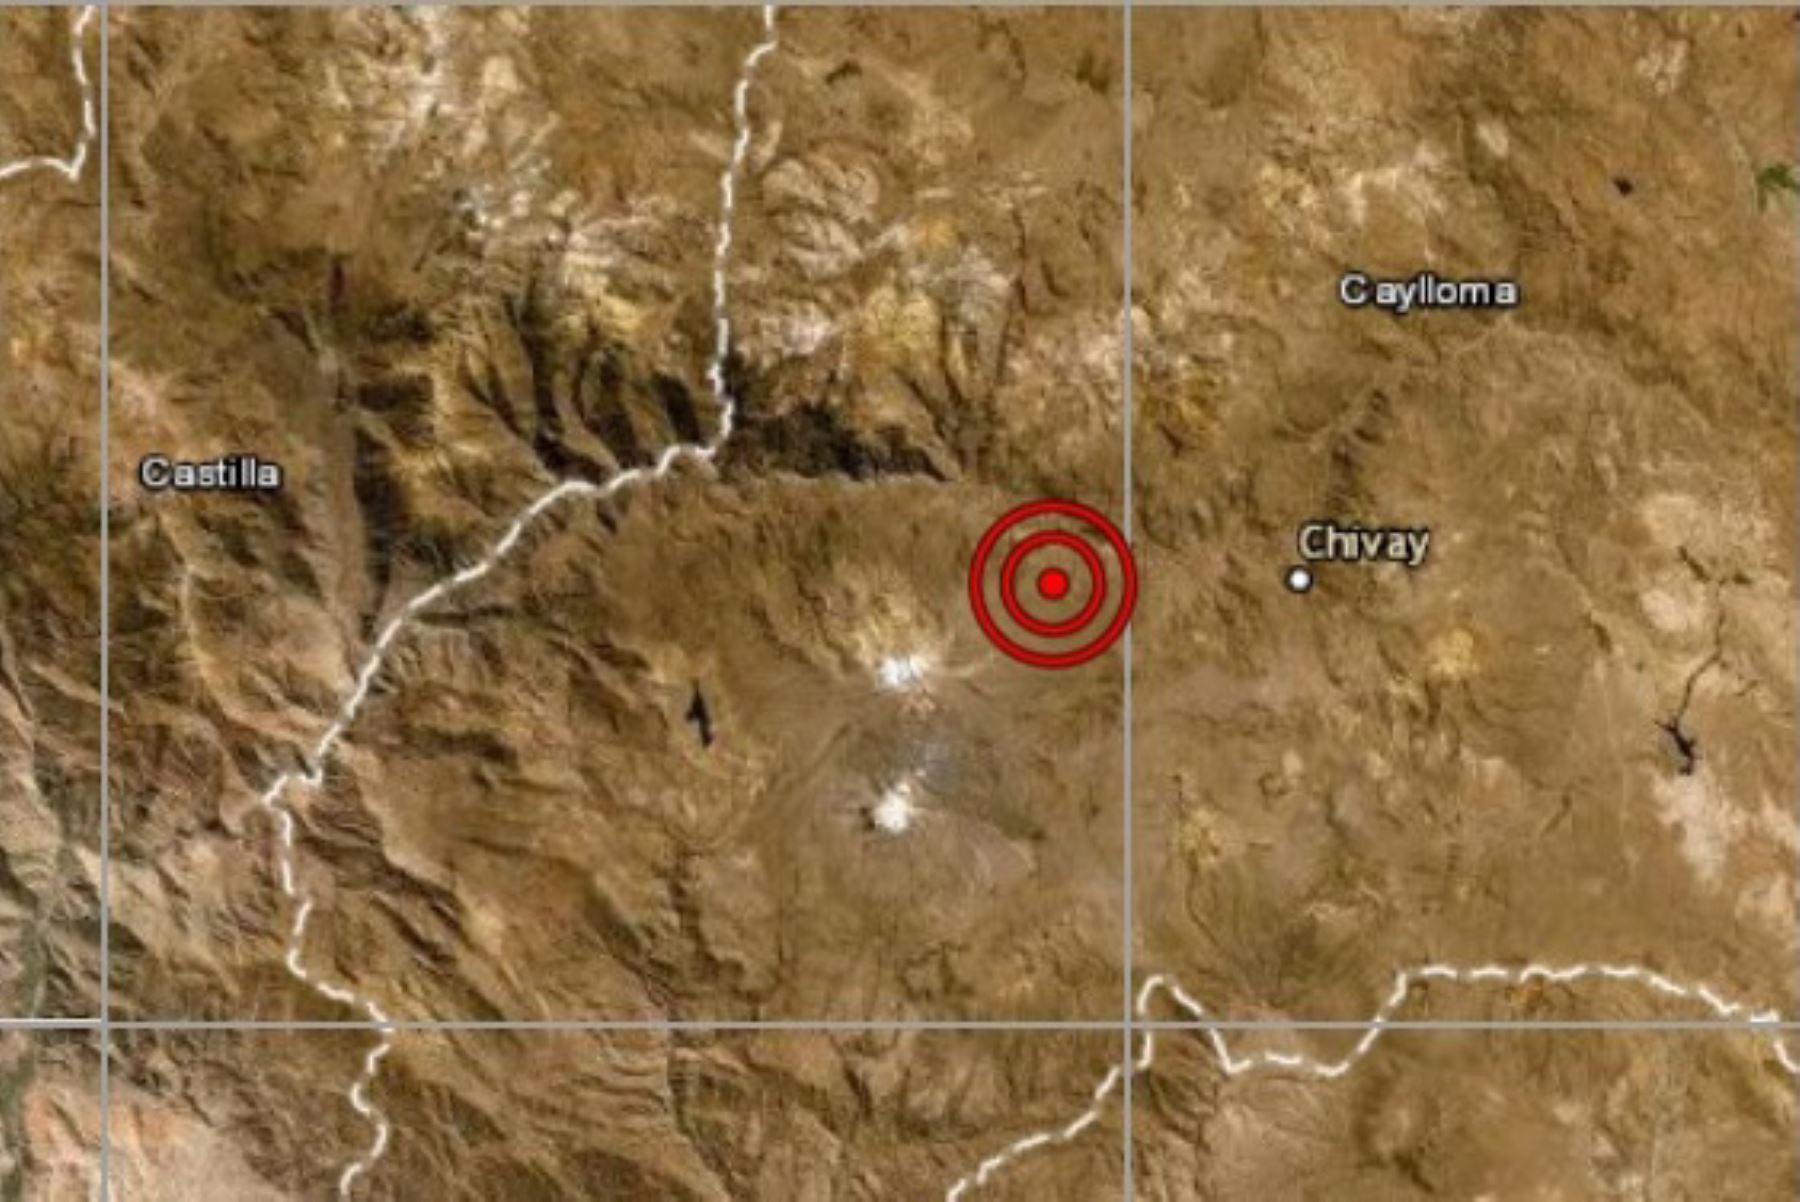 Un sismo de magnitud 3.8, con una profundidad de 154 kilómetros, remeció esta tarde el distrito de Maca, en la provincia arequipeña de Caylloma, informó el Centro Sismológico Nacional del Instituto Geofísico del Perú. Foto: ANDINA/difusión.